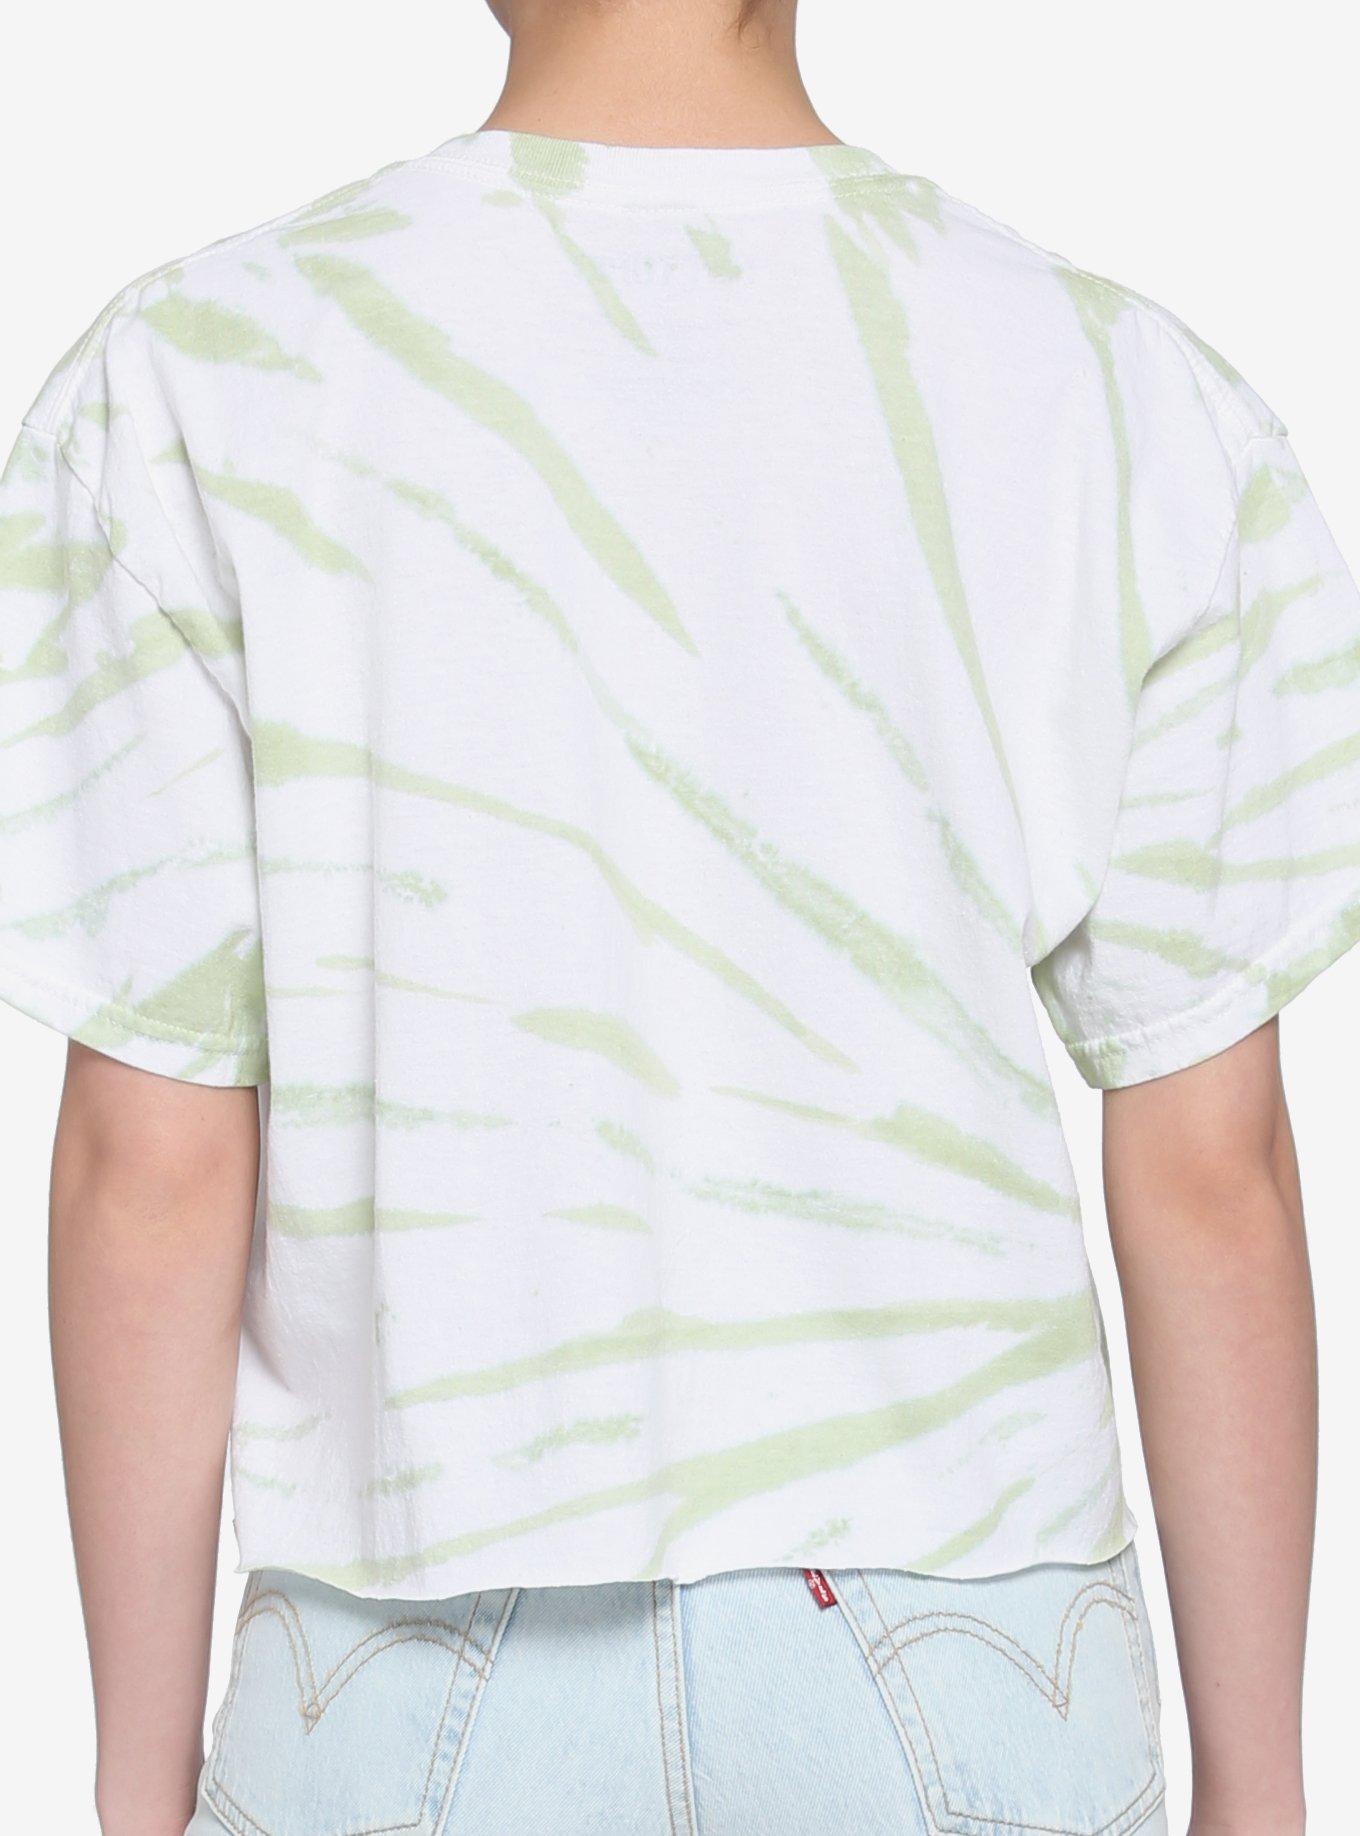 Frog Crystal Mushroom Tie-Dye Girls Crop T-Shirt, MULTI, alternate